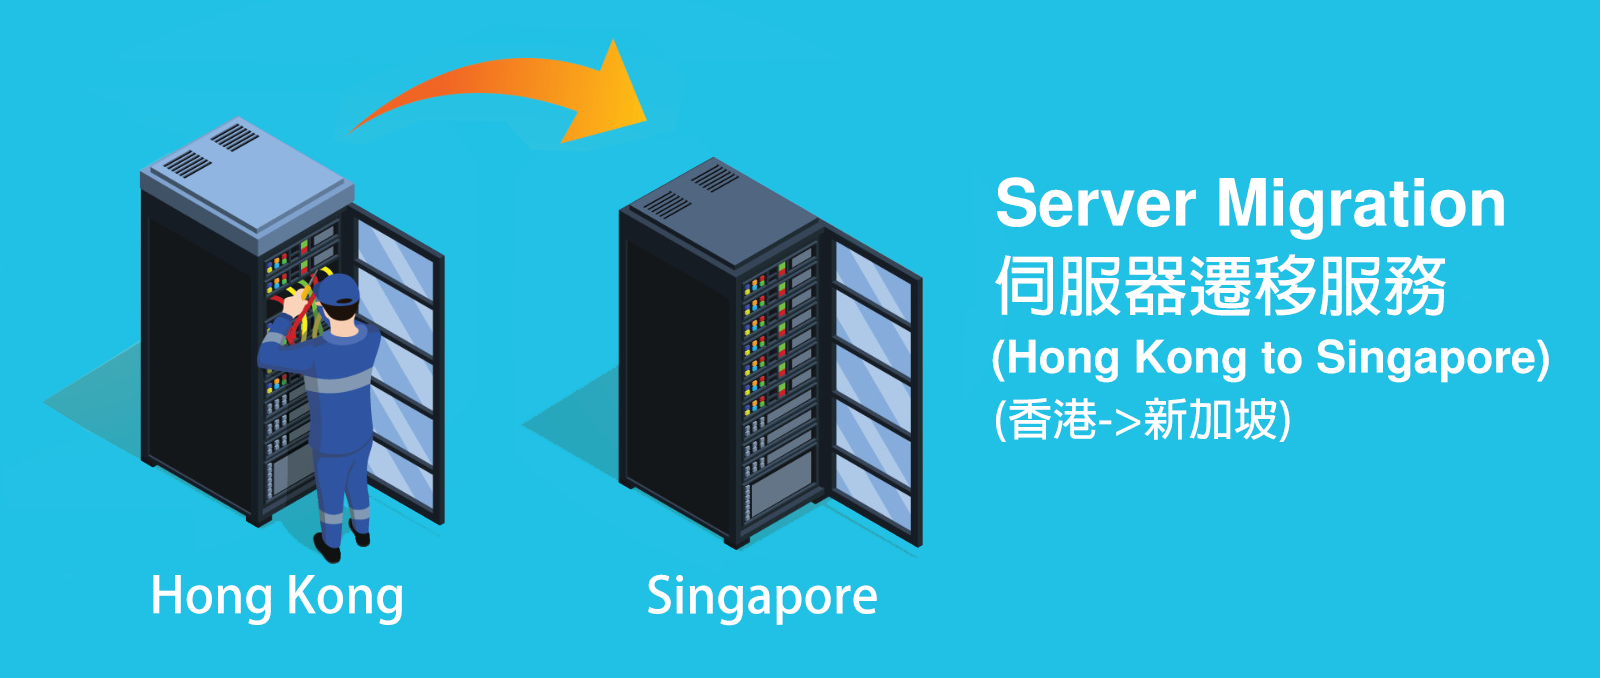 伺服器遷移到新加坡